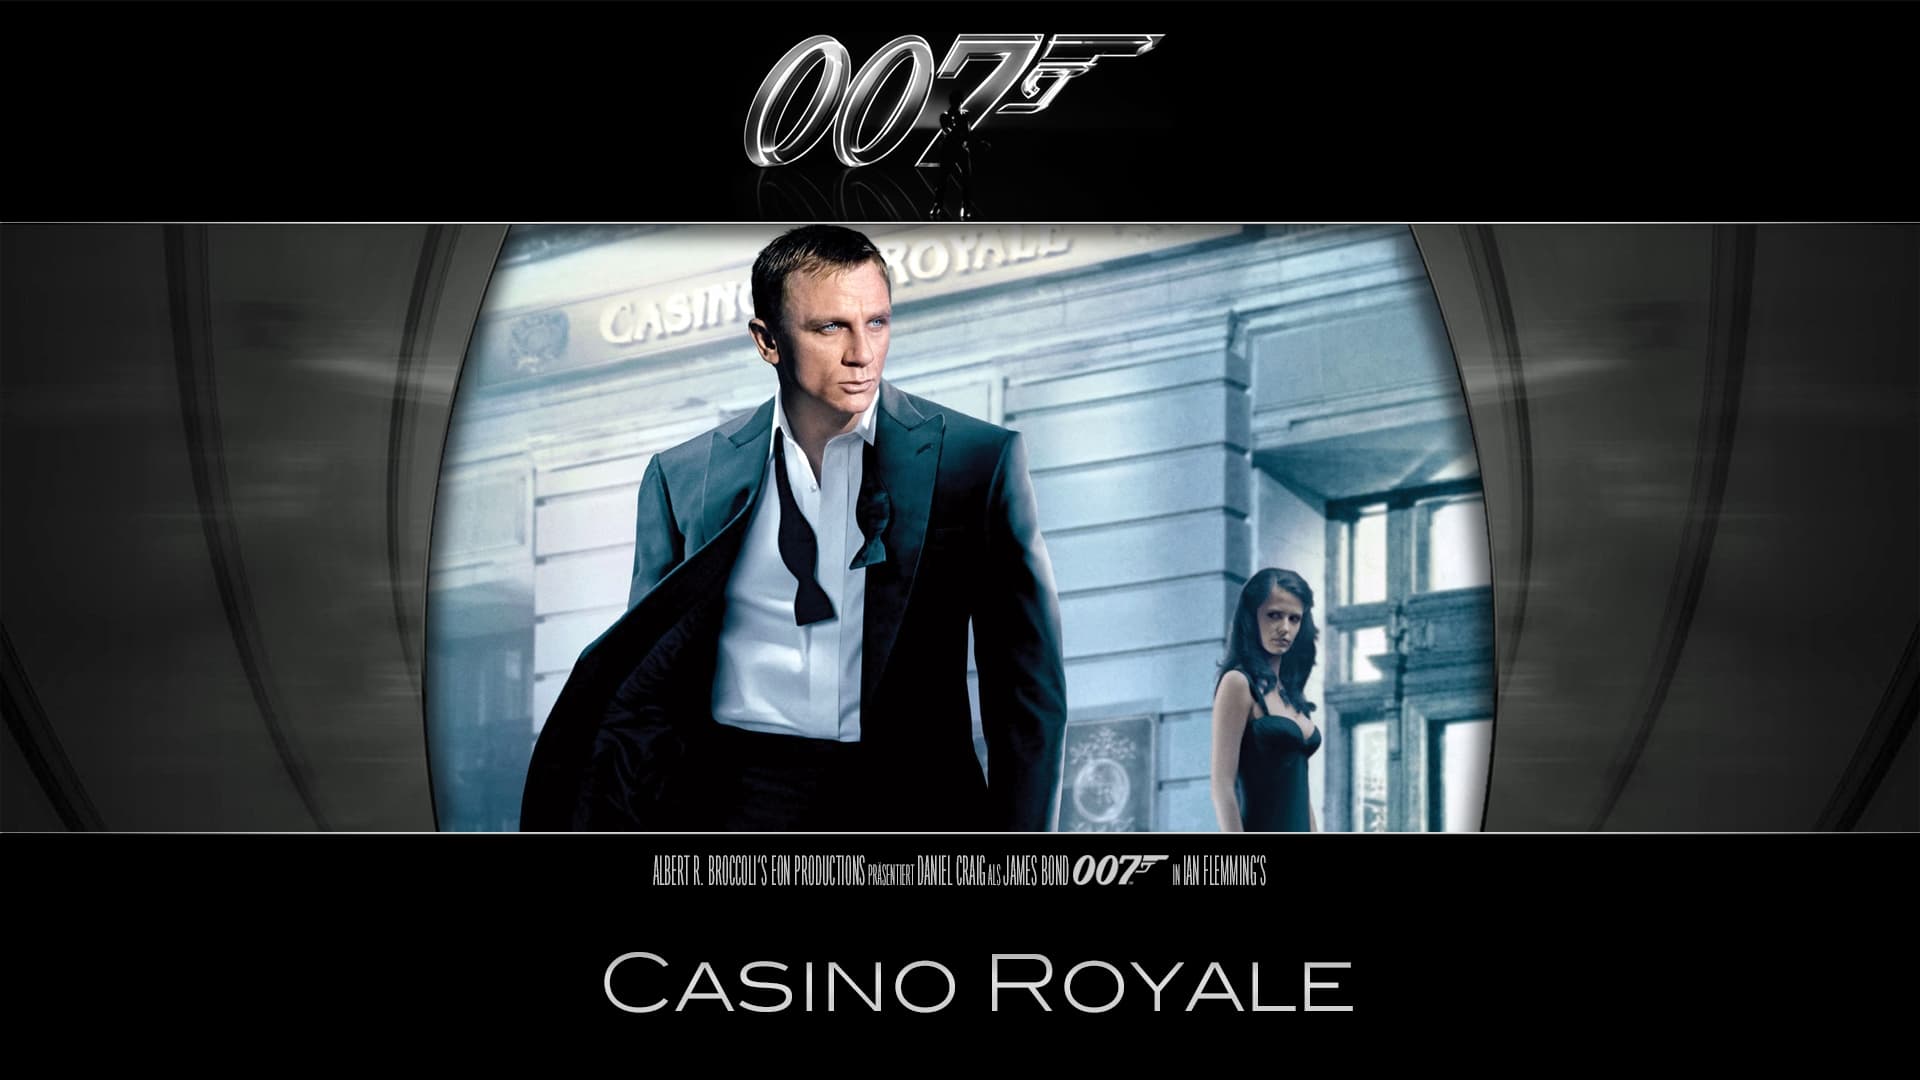 Casino royale movie watch online free смотреть очную ставку онлайн бесплатно без регистрации